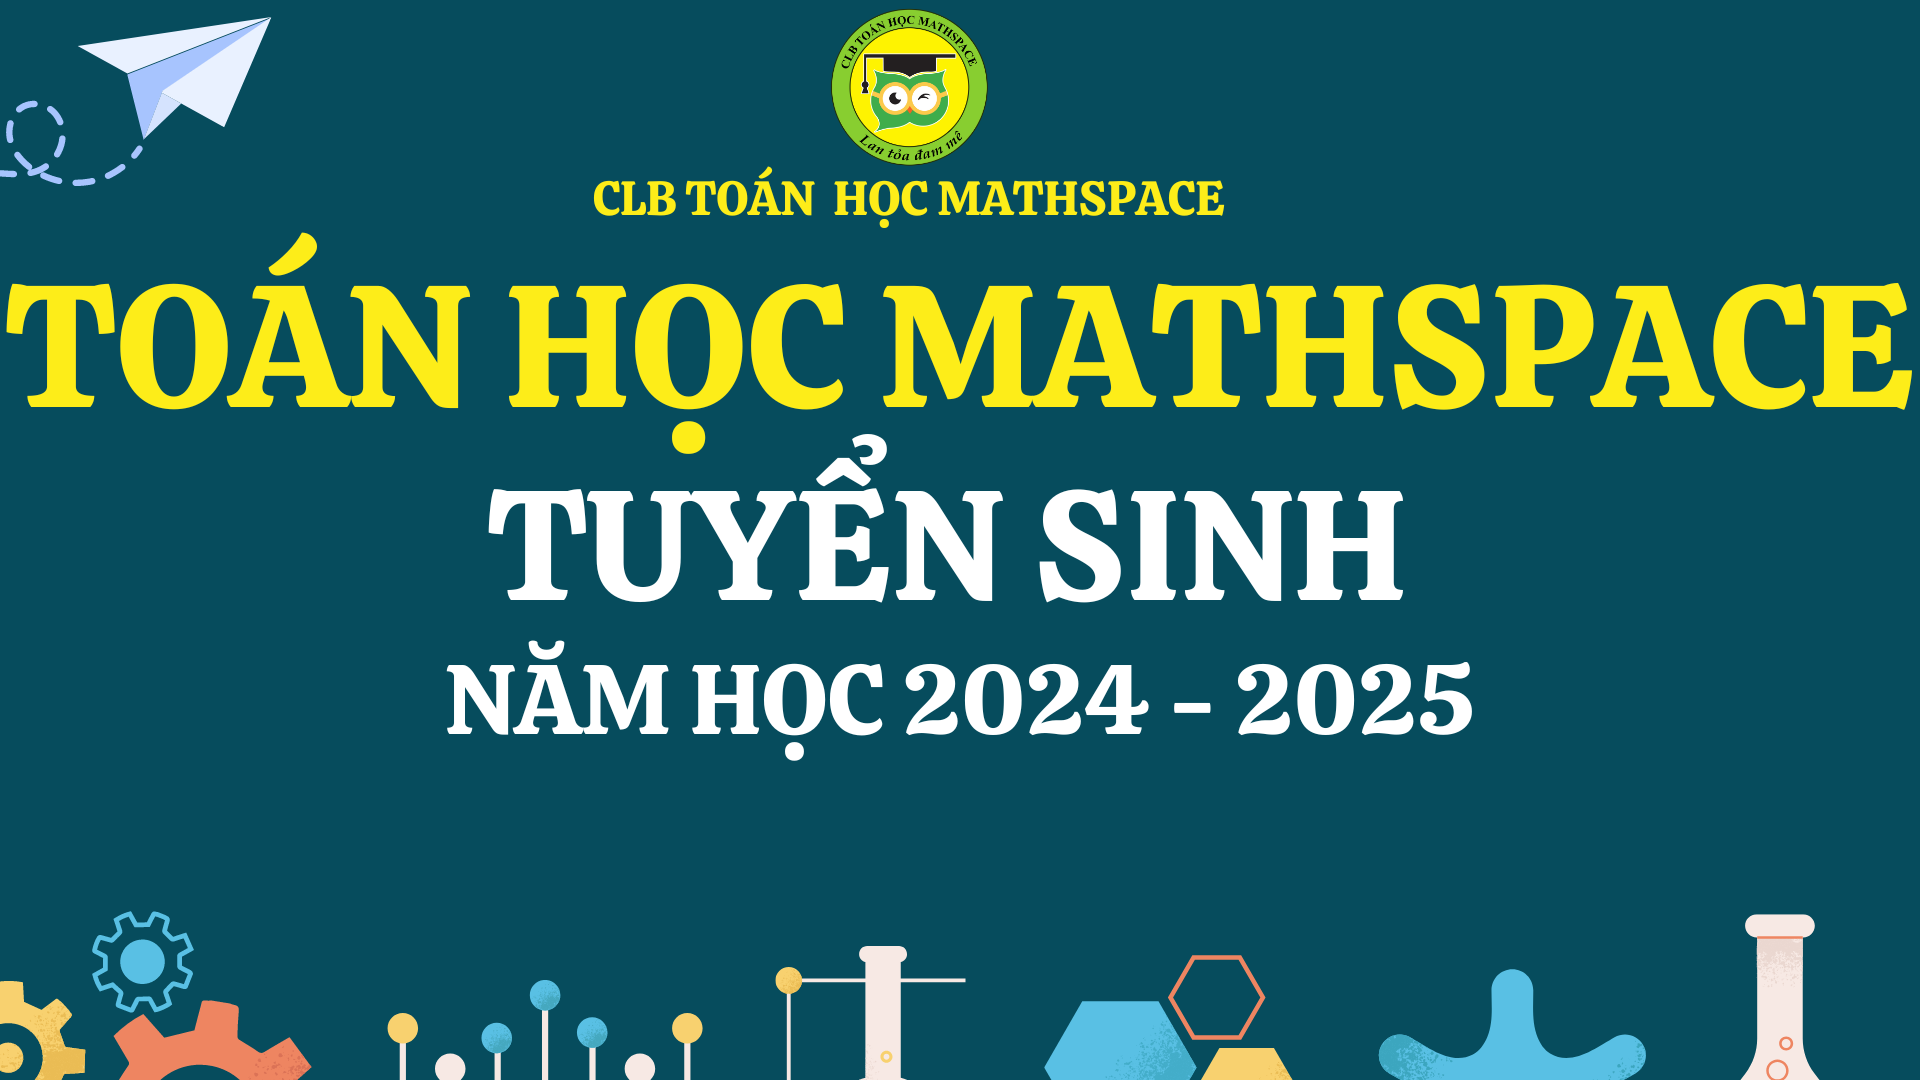 MATHSPACE TUYỂN SINH NĂM HỌC MỚI 2024-2025